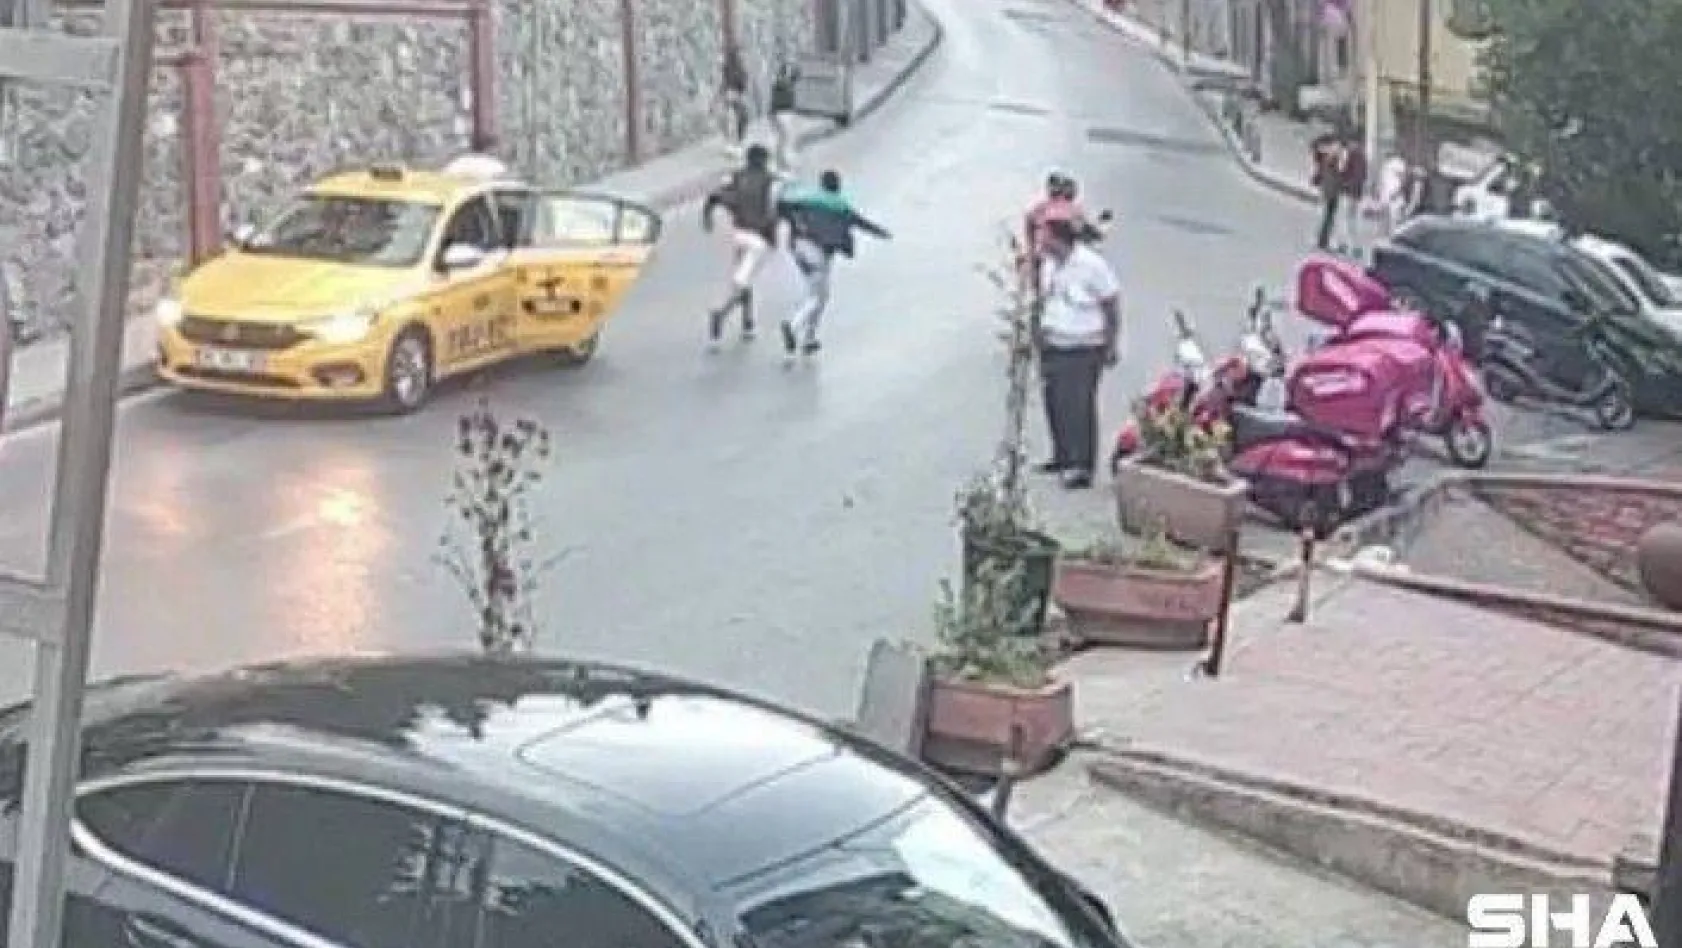 Beyoğlu'nda telefonu çalınan genç, hırsızın arkadaşları tarafından önce dövüldü ardından da kaçırıldı